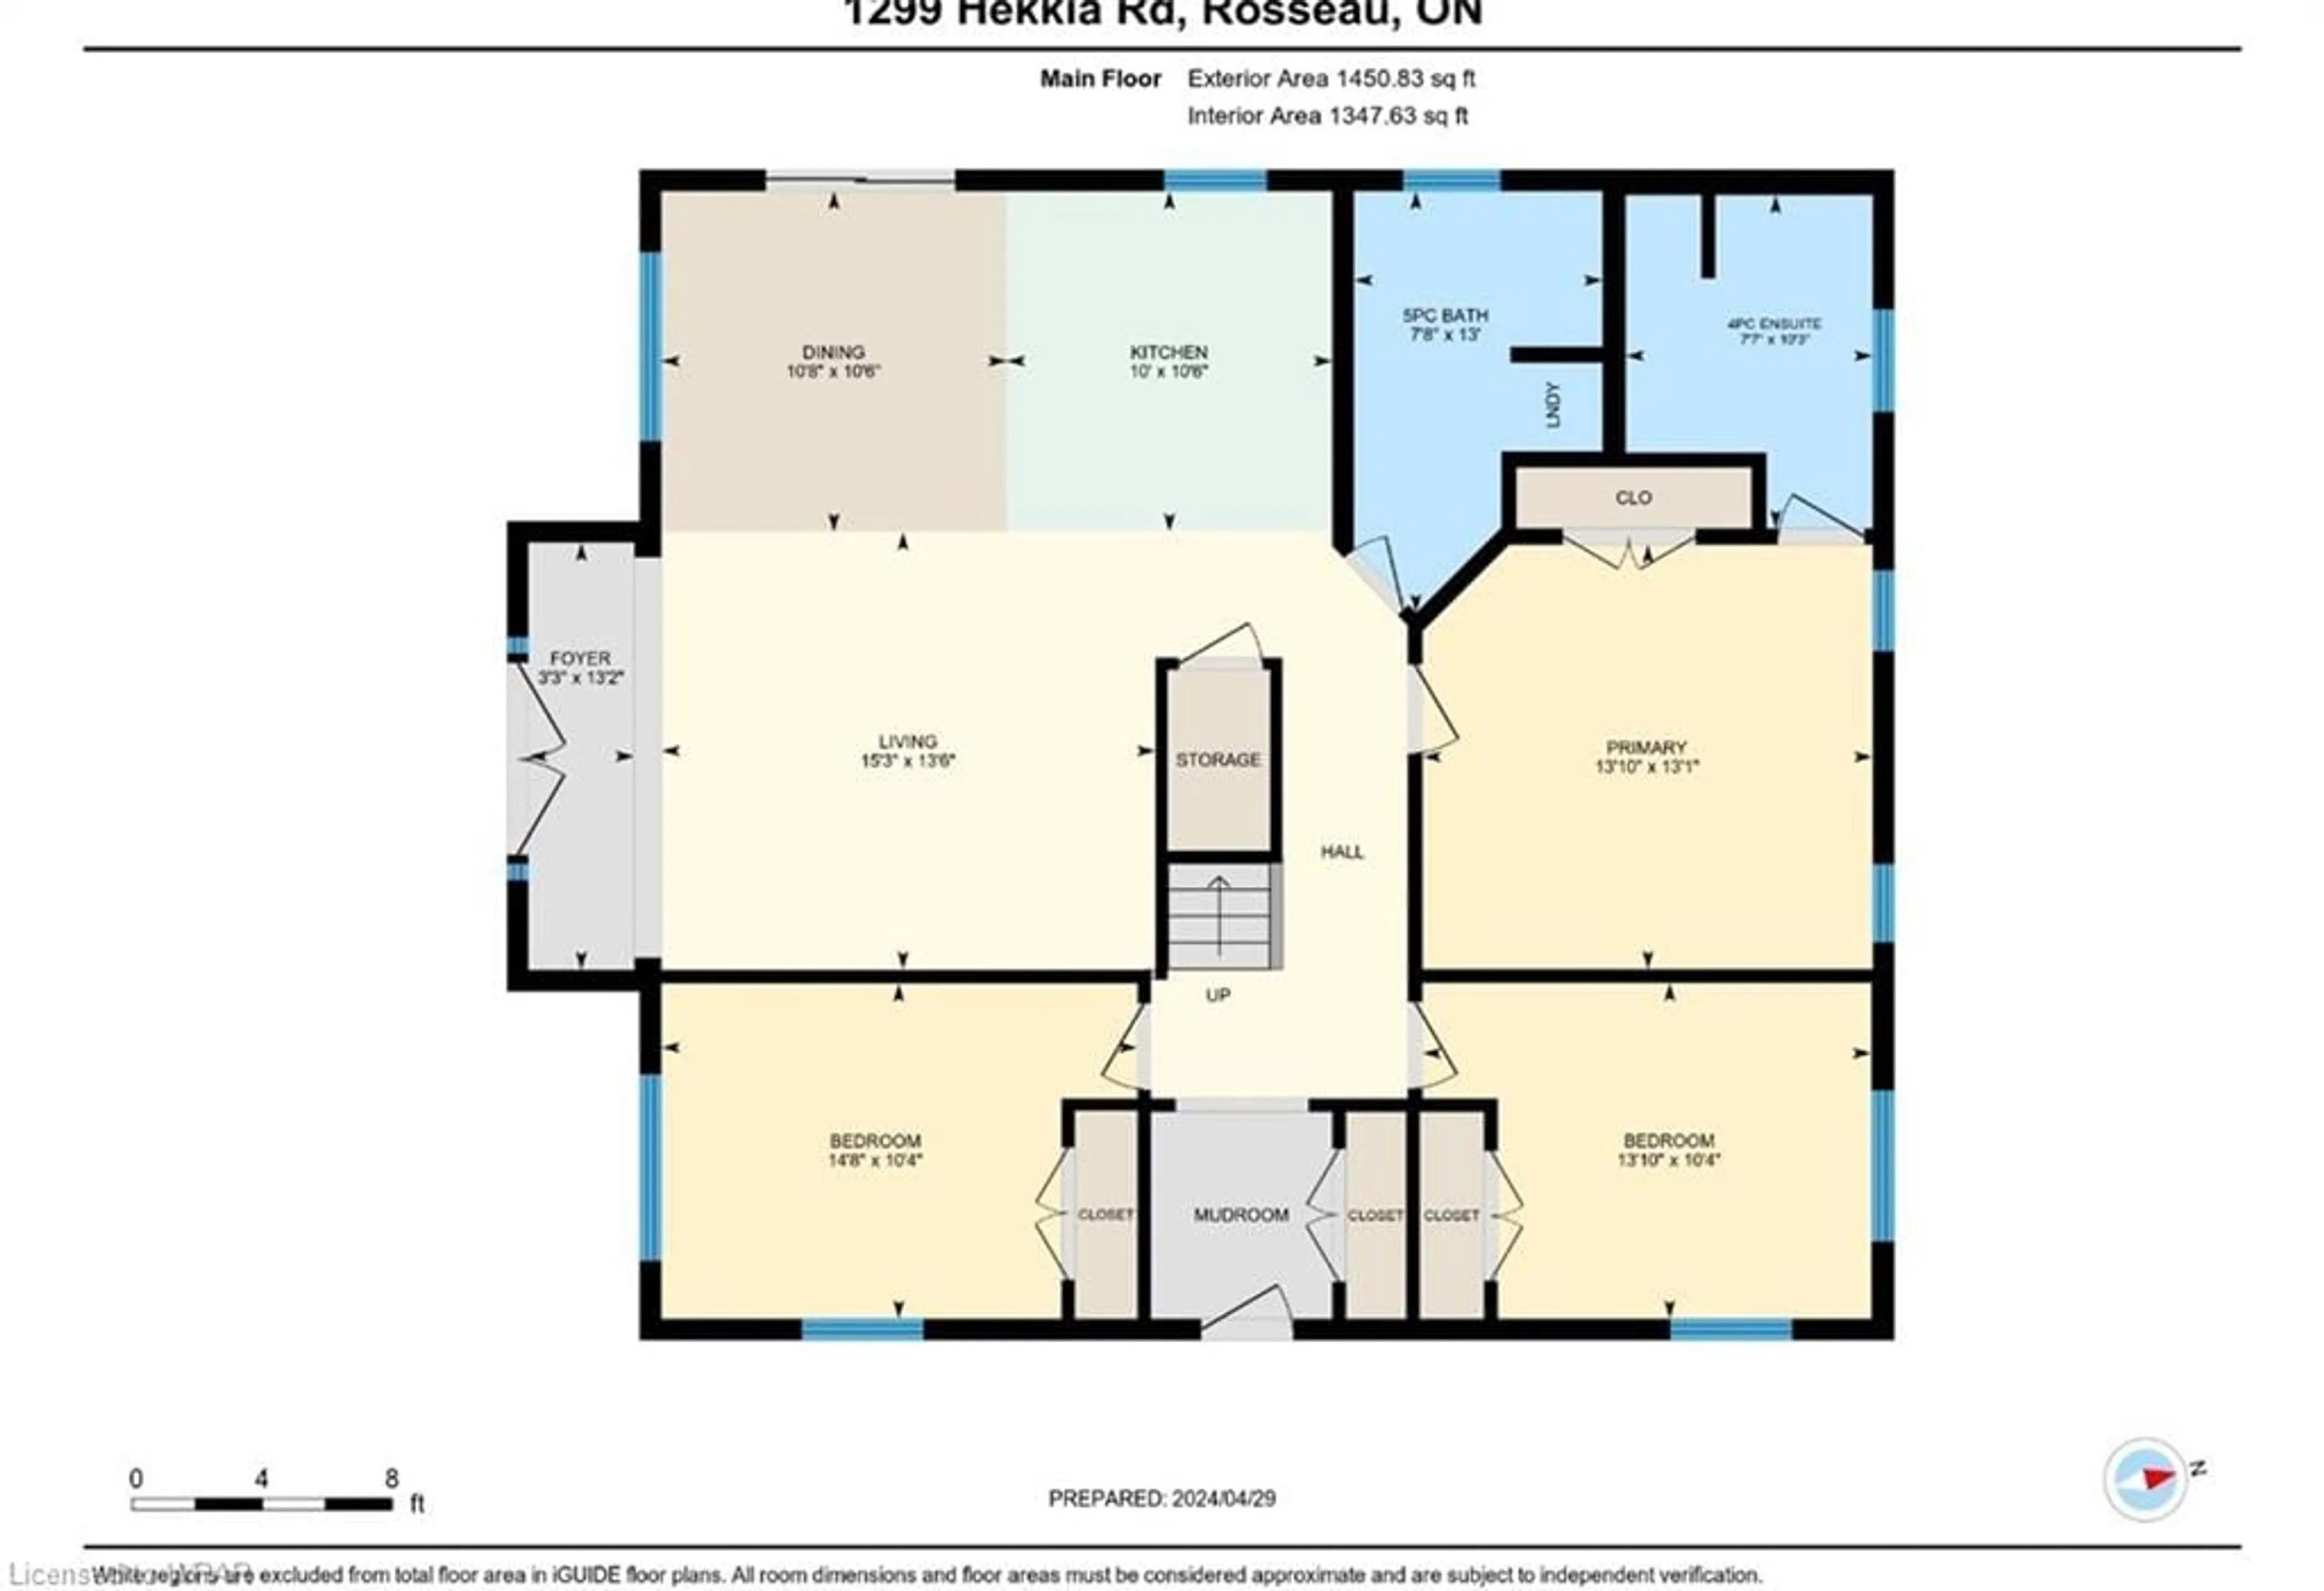 Floor plan for 1299 Hekkla Road, Rosseau Ontario P0C 1J0